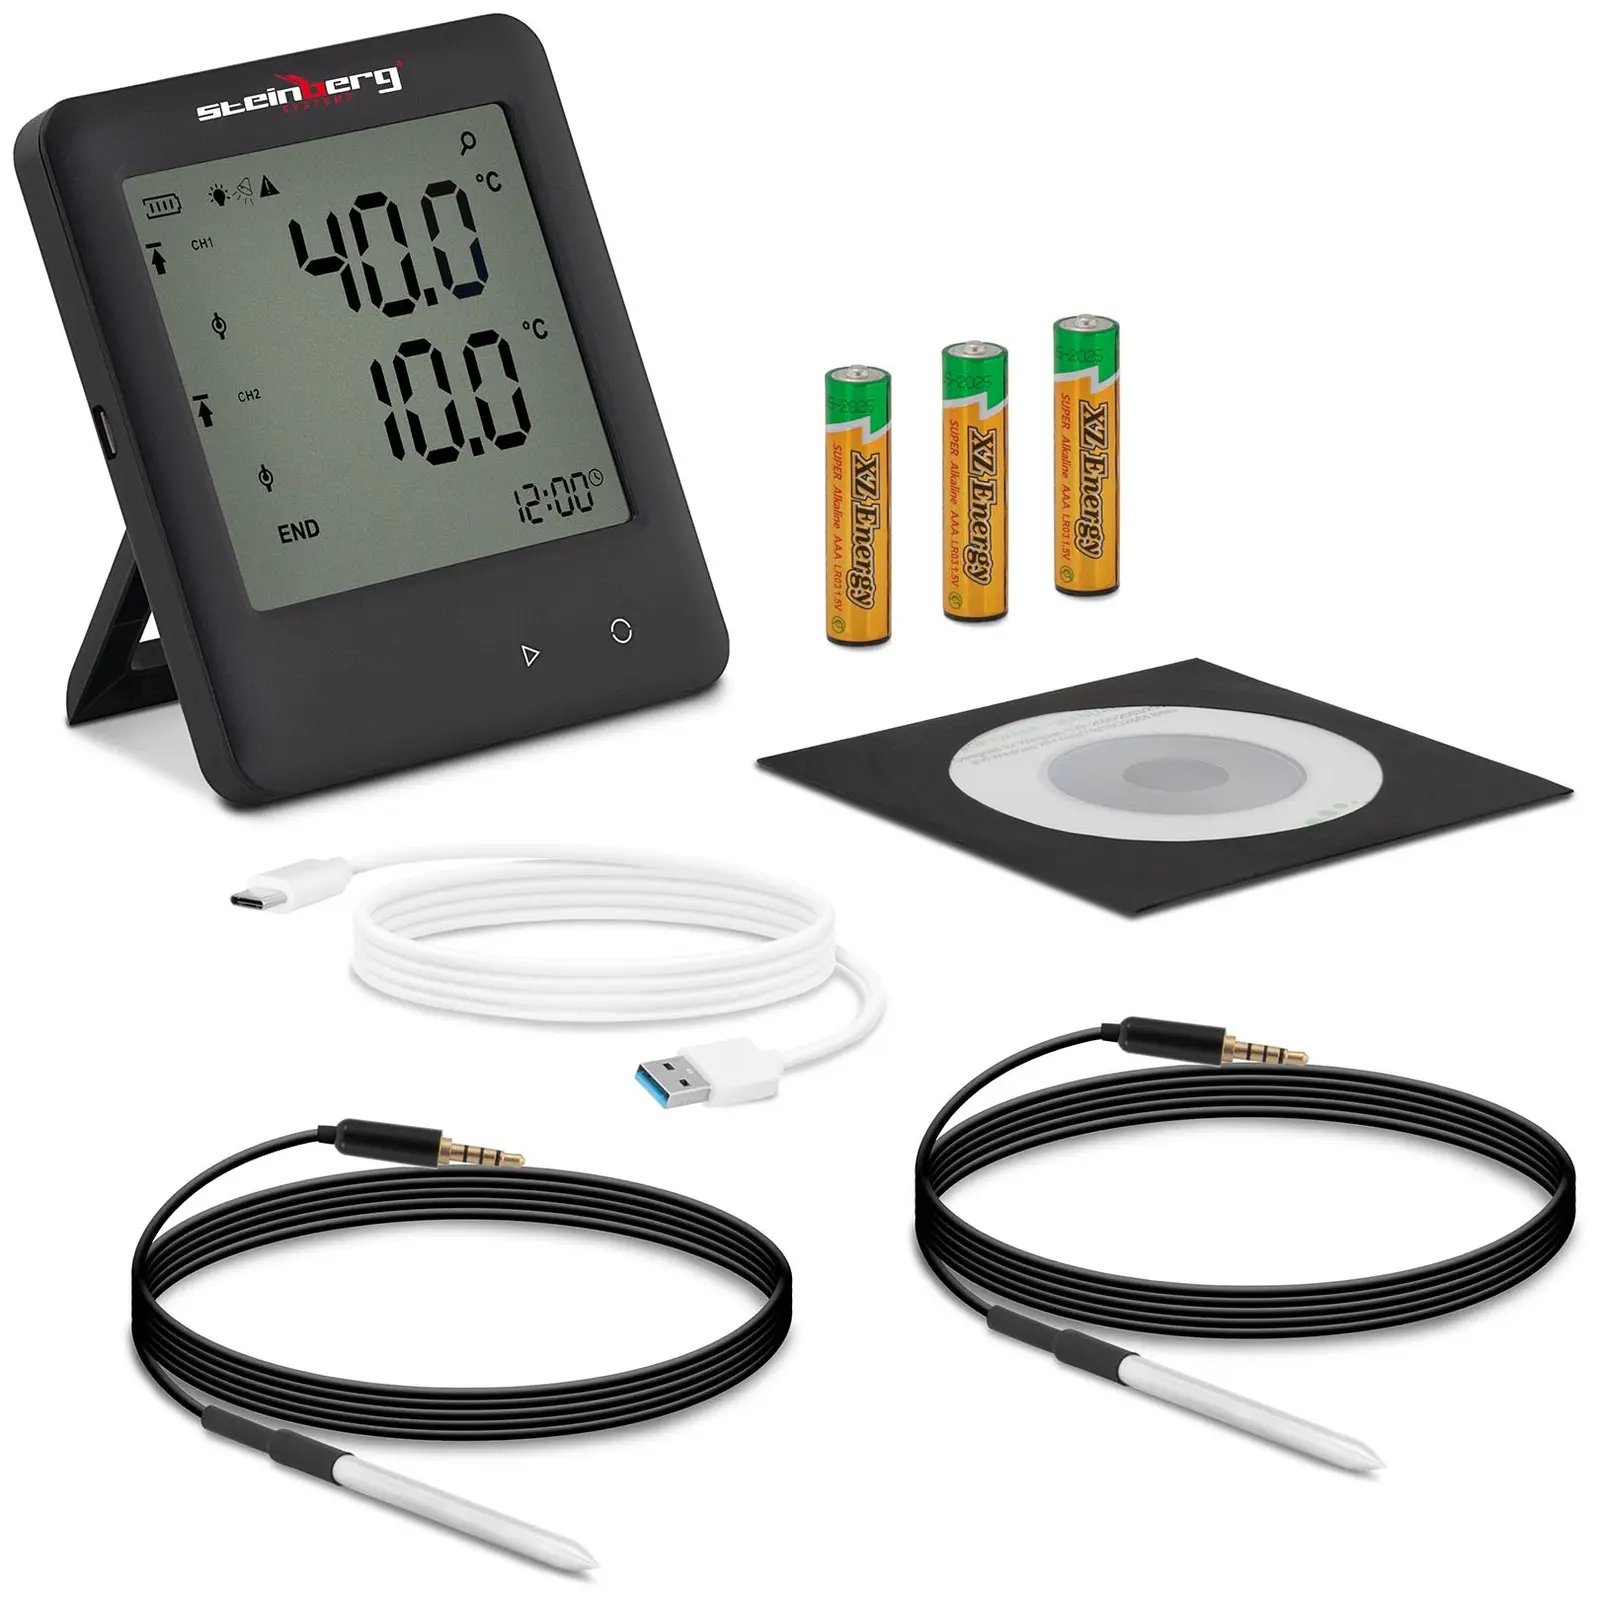 Καταγραφέας δεδομένων θερμοκρασίας - LCD - -40 έως +125 °C - 2 εξωτερικοί αισθητήρες